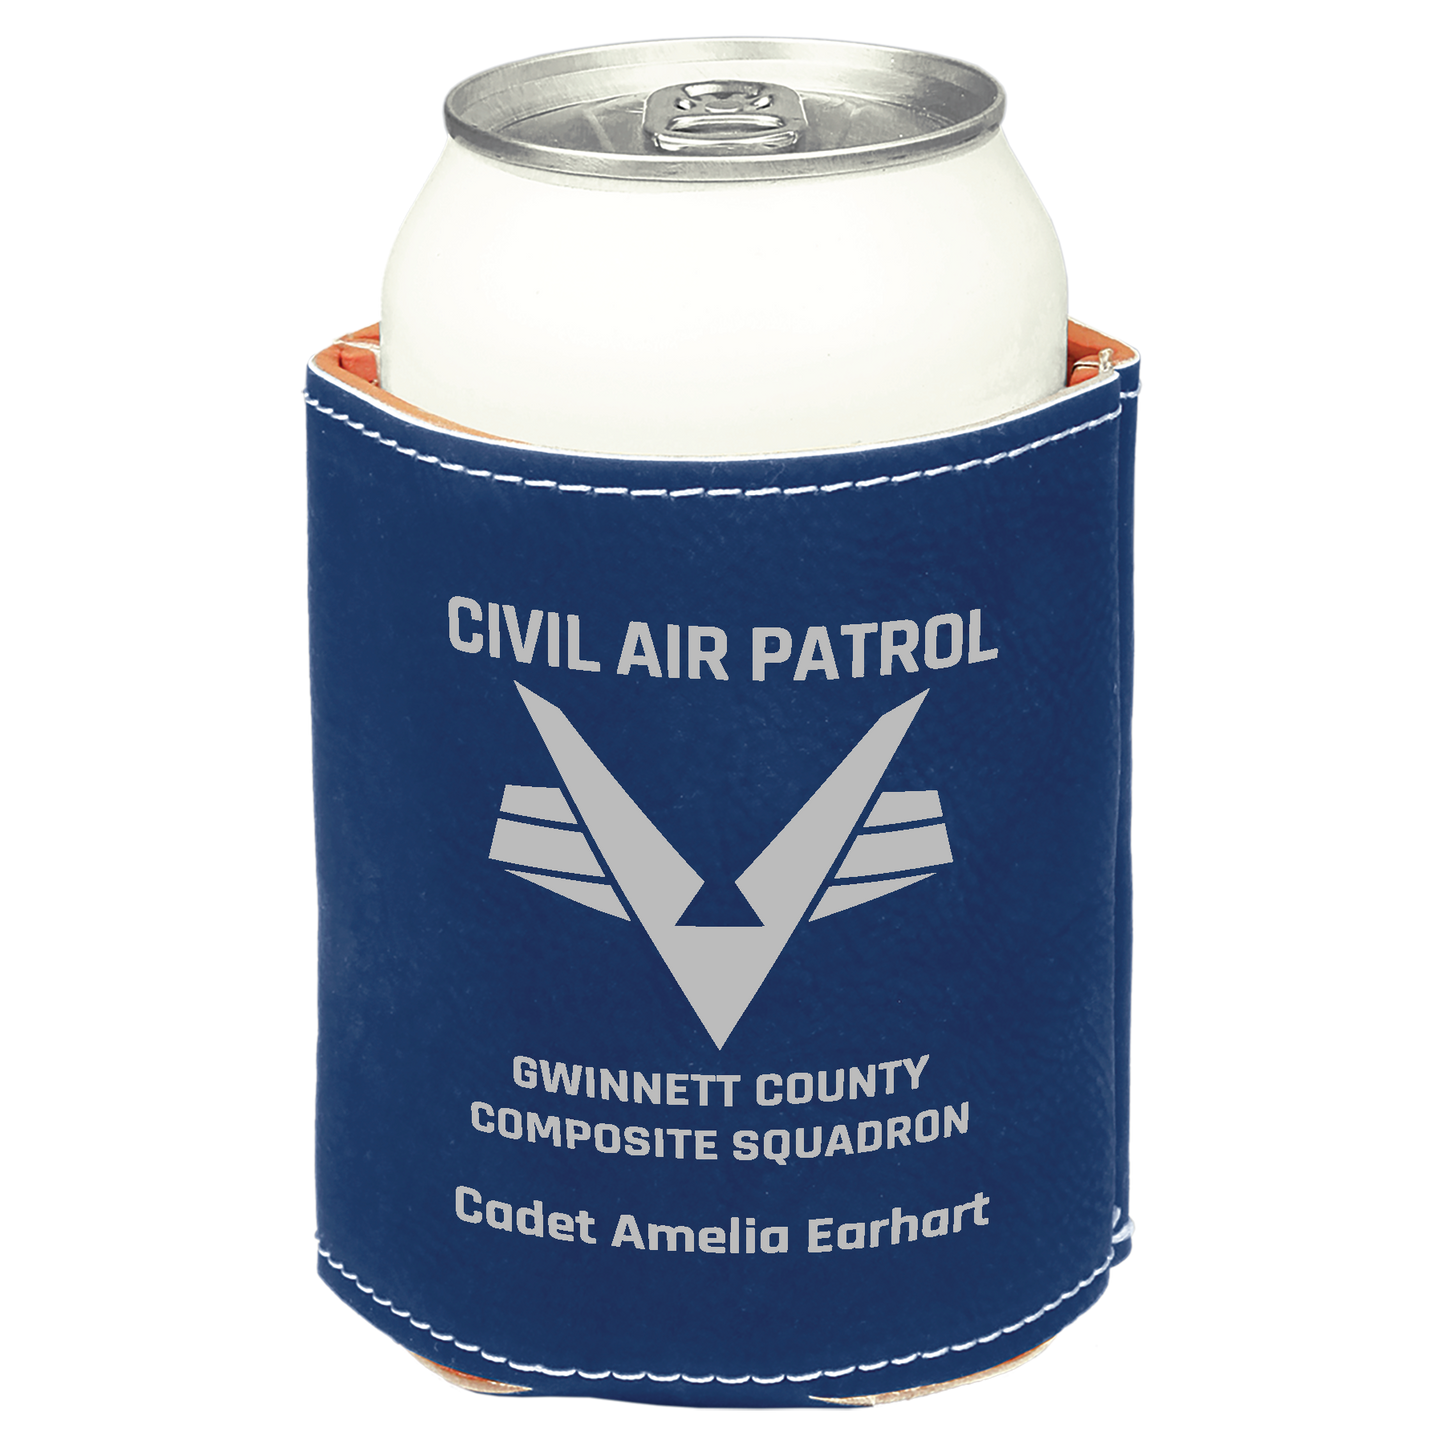 Vegan Leather Can koozie / Beverage Holder - Gwinnet County Civil Air Patrol